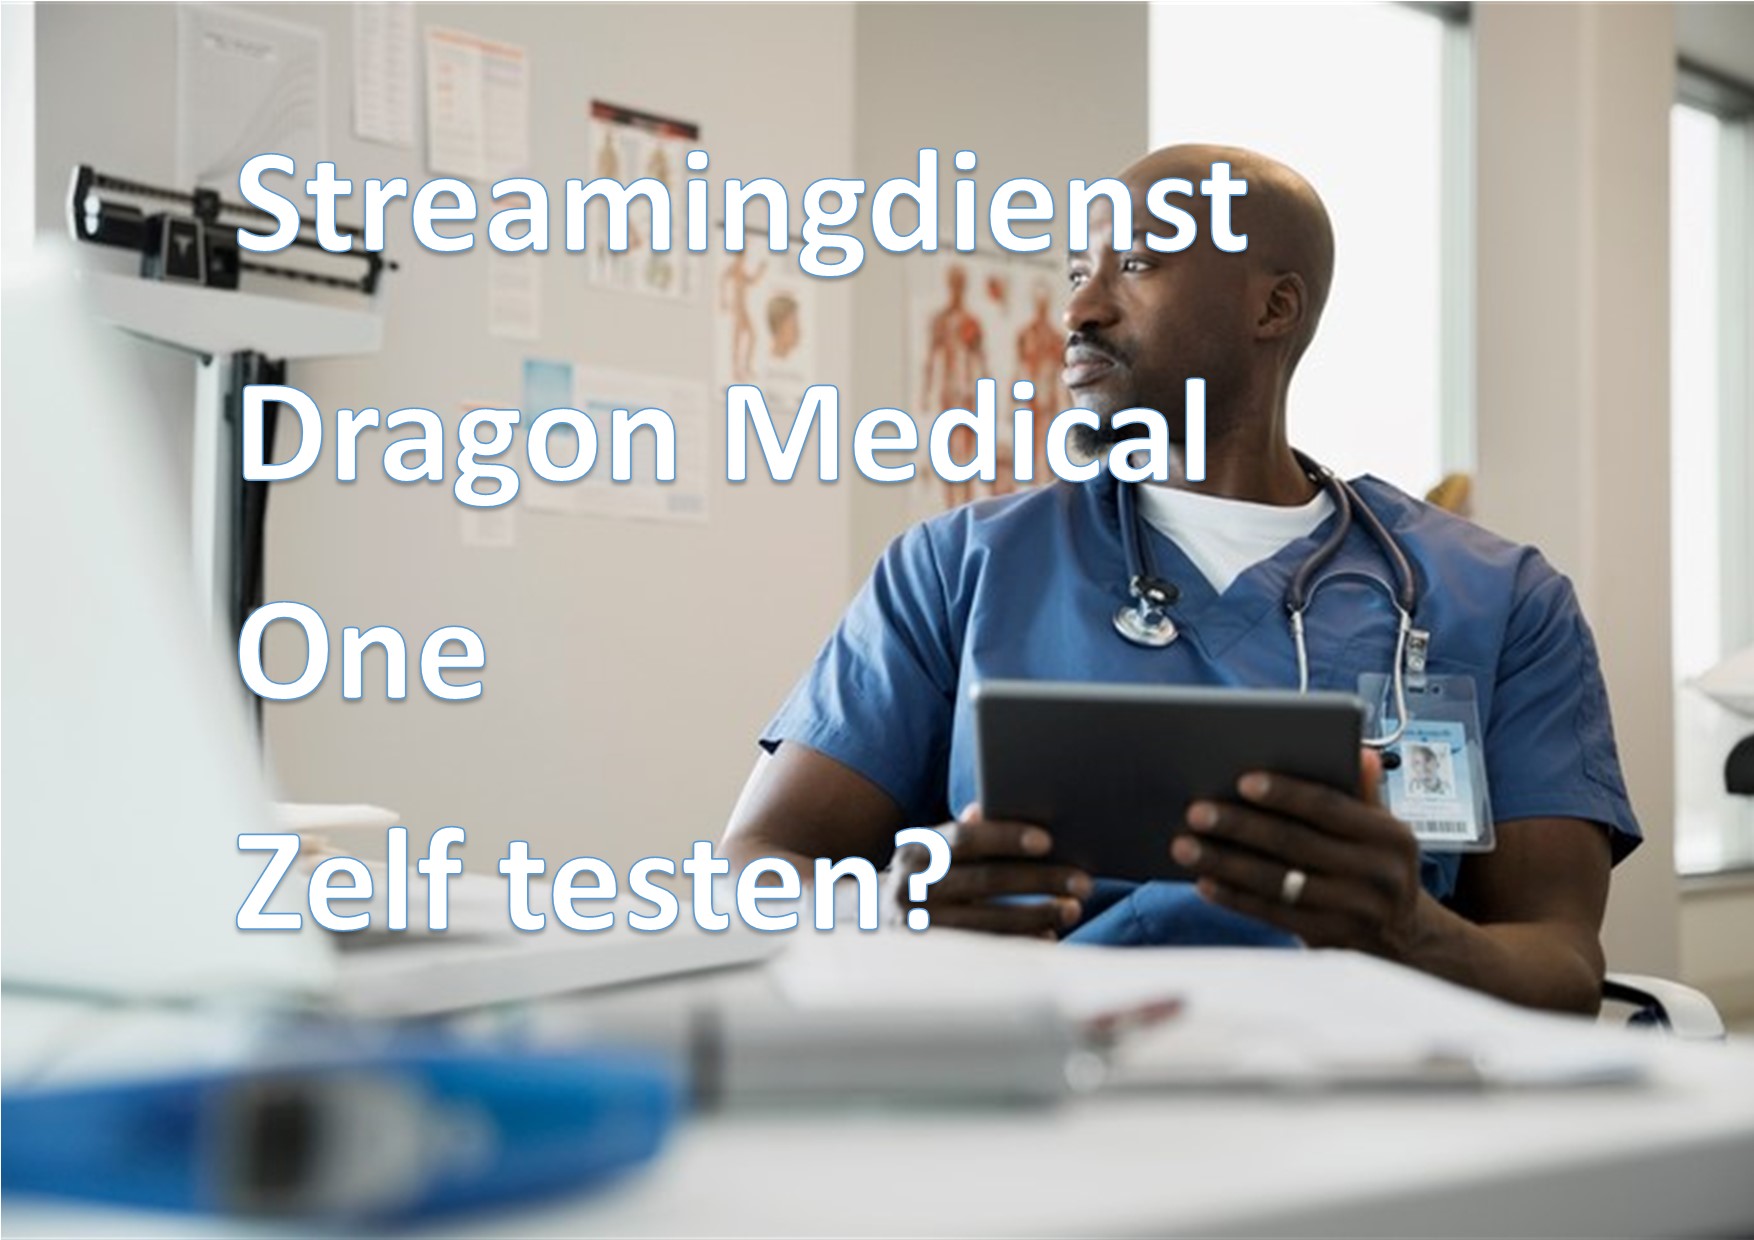 Dragon Medical One, test het zelf uit